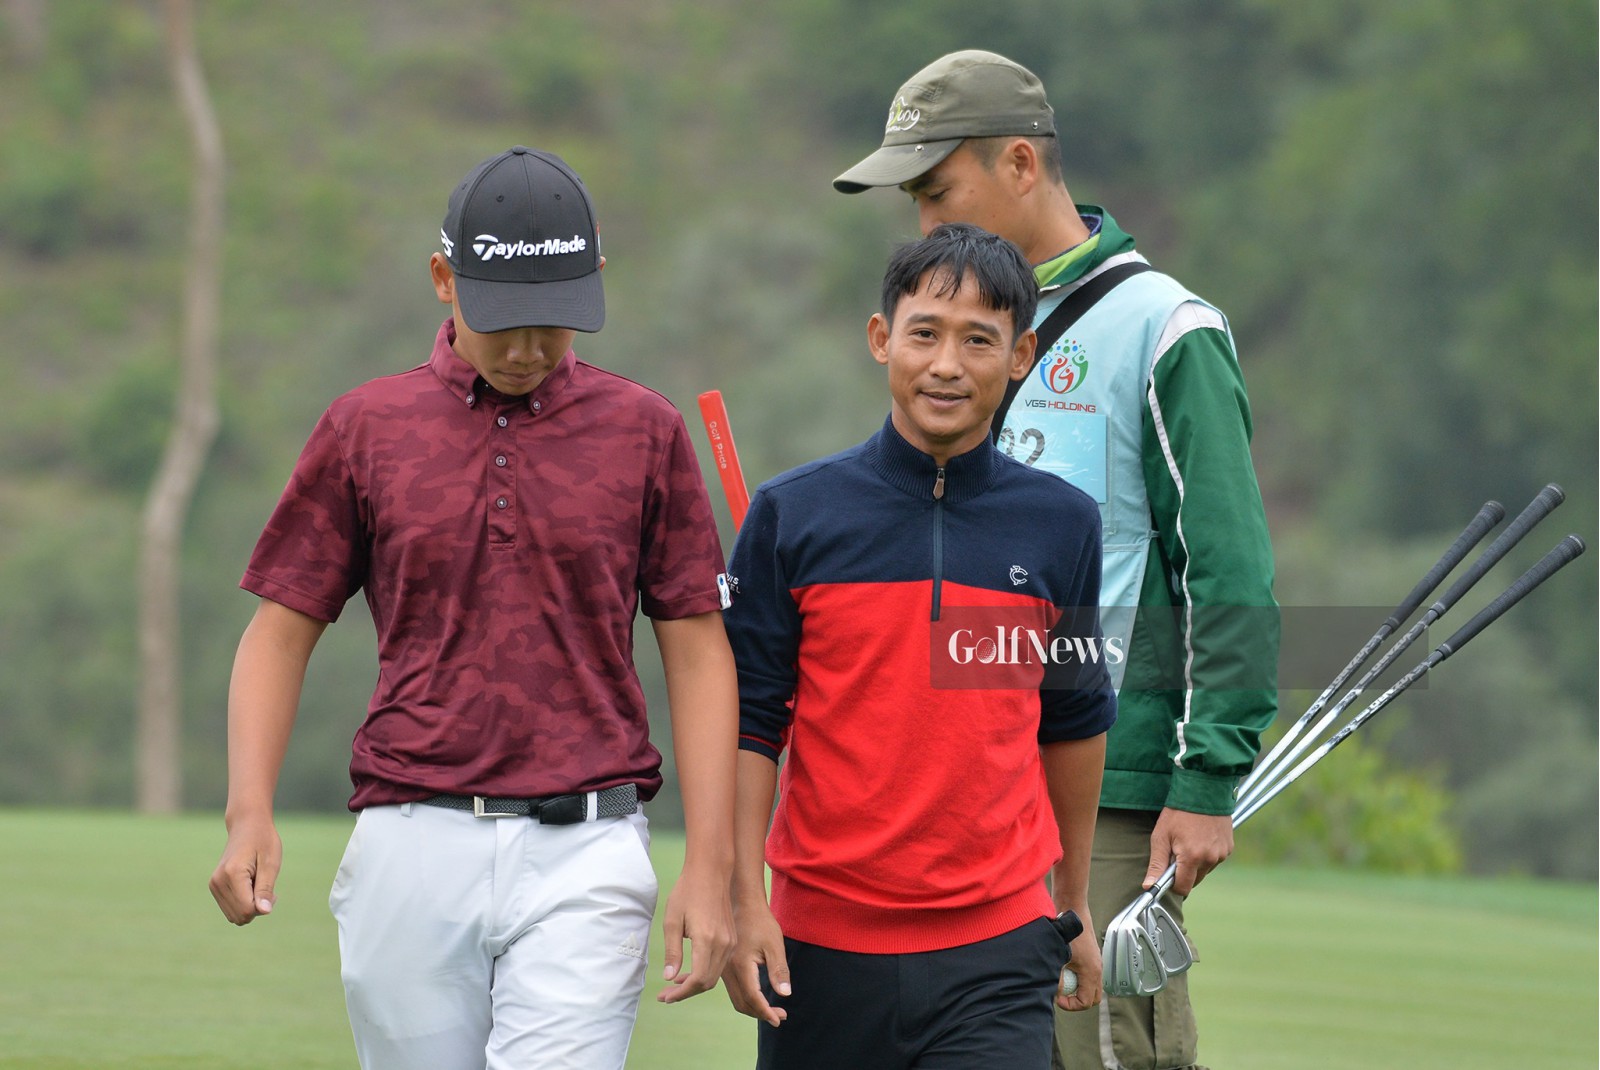 Đặng Quang Anh bị loại ở bán kết. Ảnh: Golf News